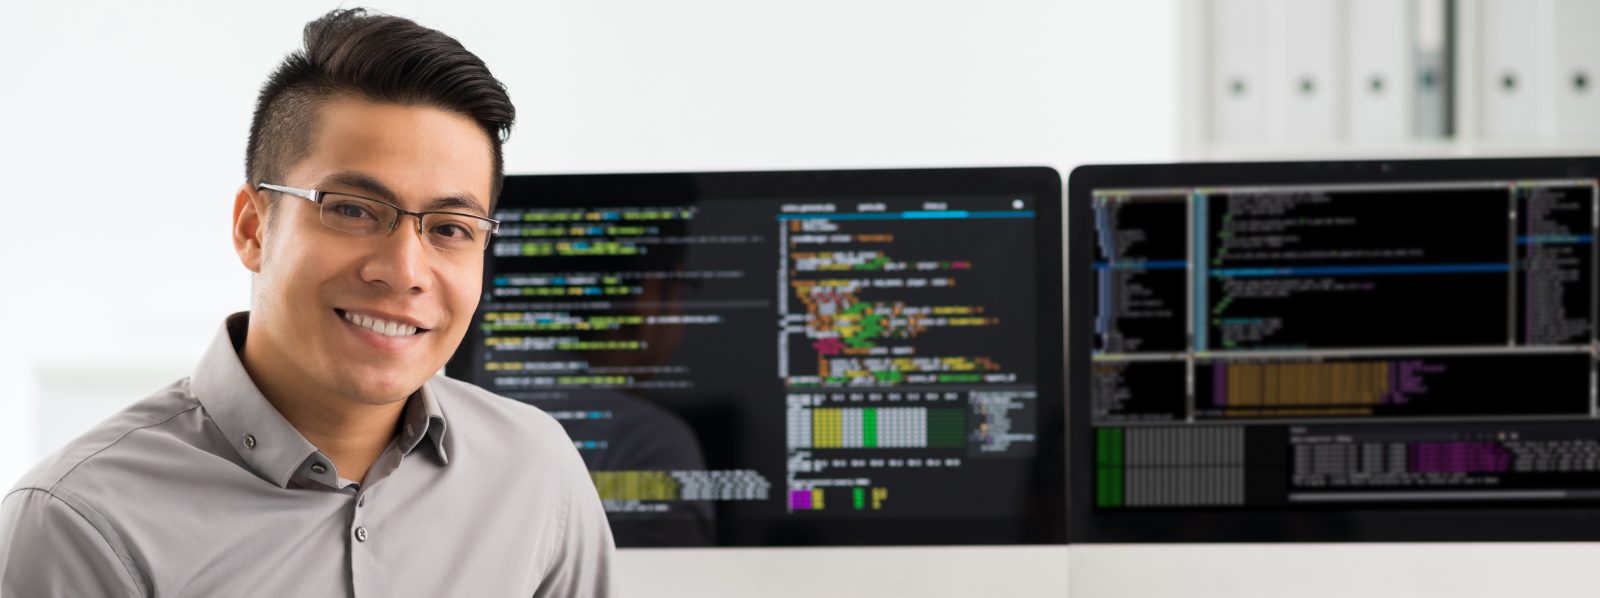 man looking at camera with software coding computer screens behind him